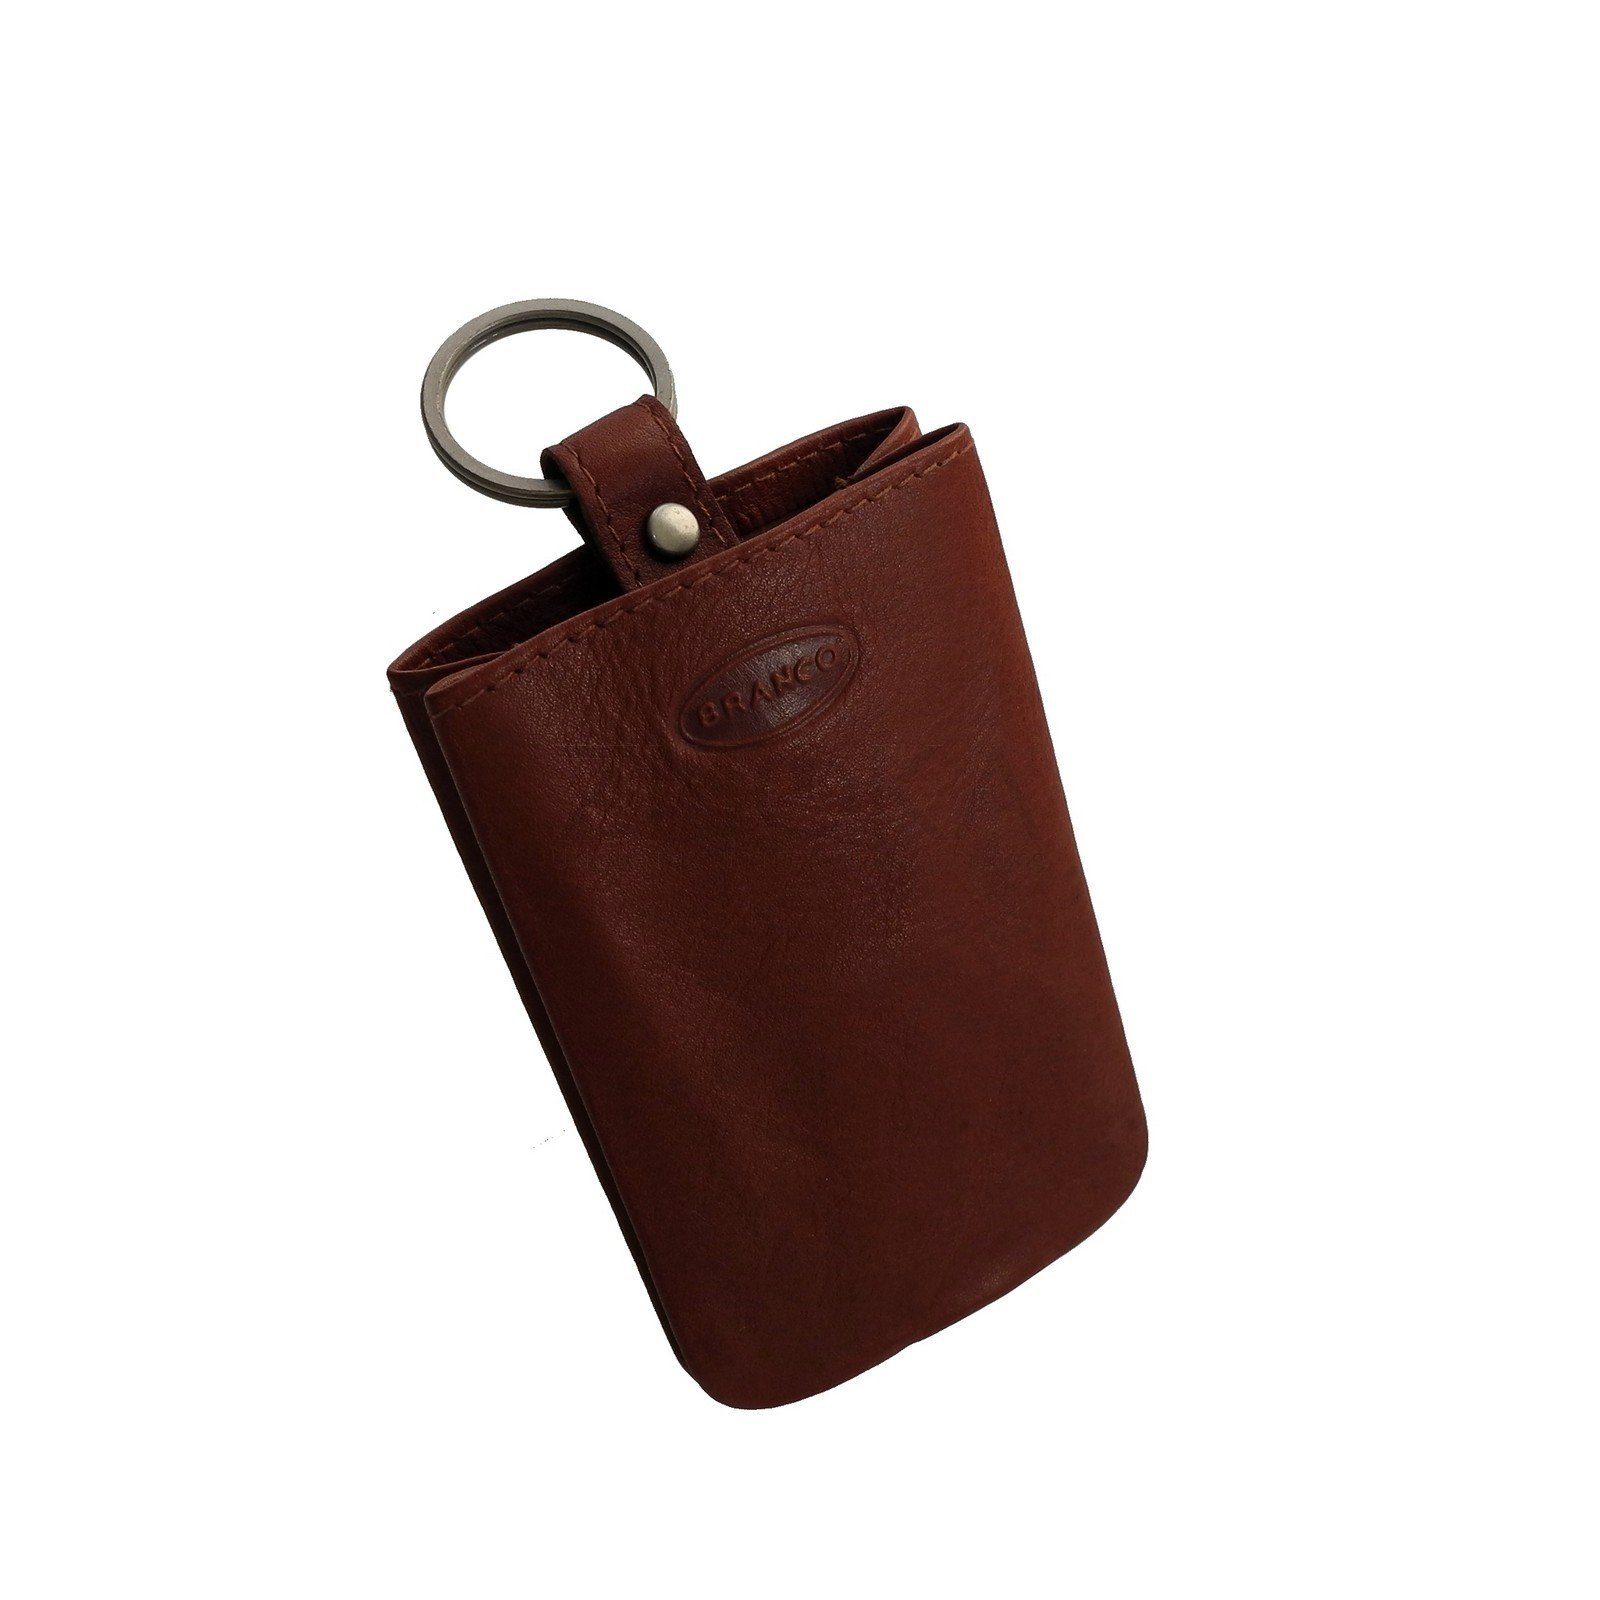 BRANCO Schlüsseltasche Branco - Leder Schlüsseletui Schlüsseltasche  Schlüsselringe Schlüssel, Maße ca. in Zentimeter : 10 x 6.5 x 1 (BxHxT),  Gewicht ca. 26 Gramm